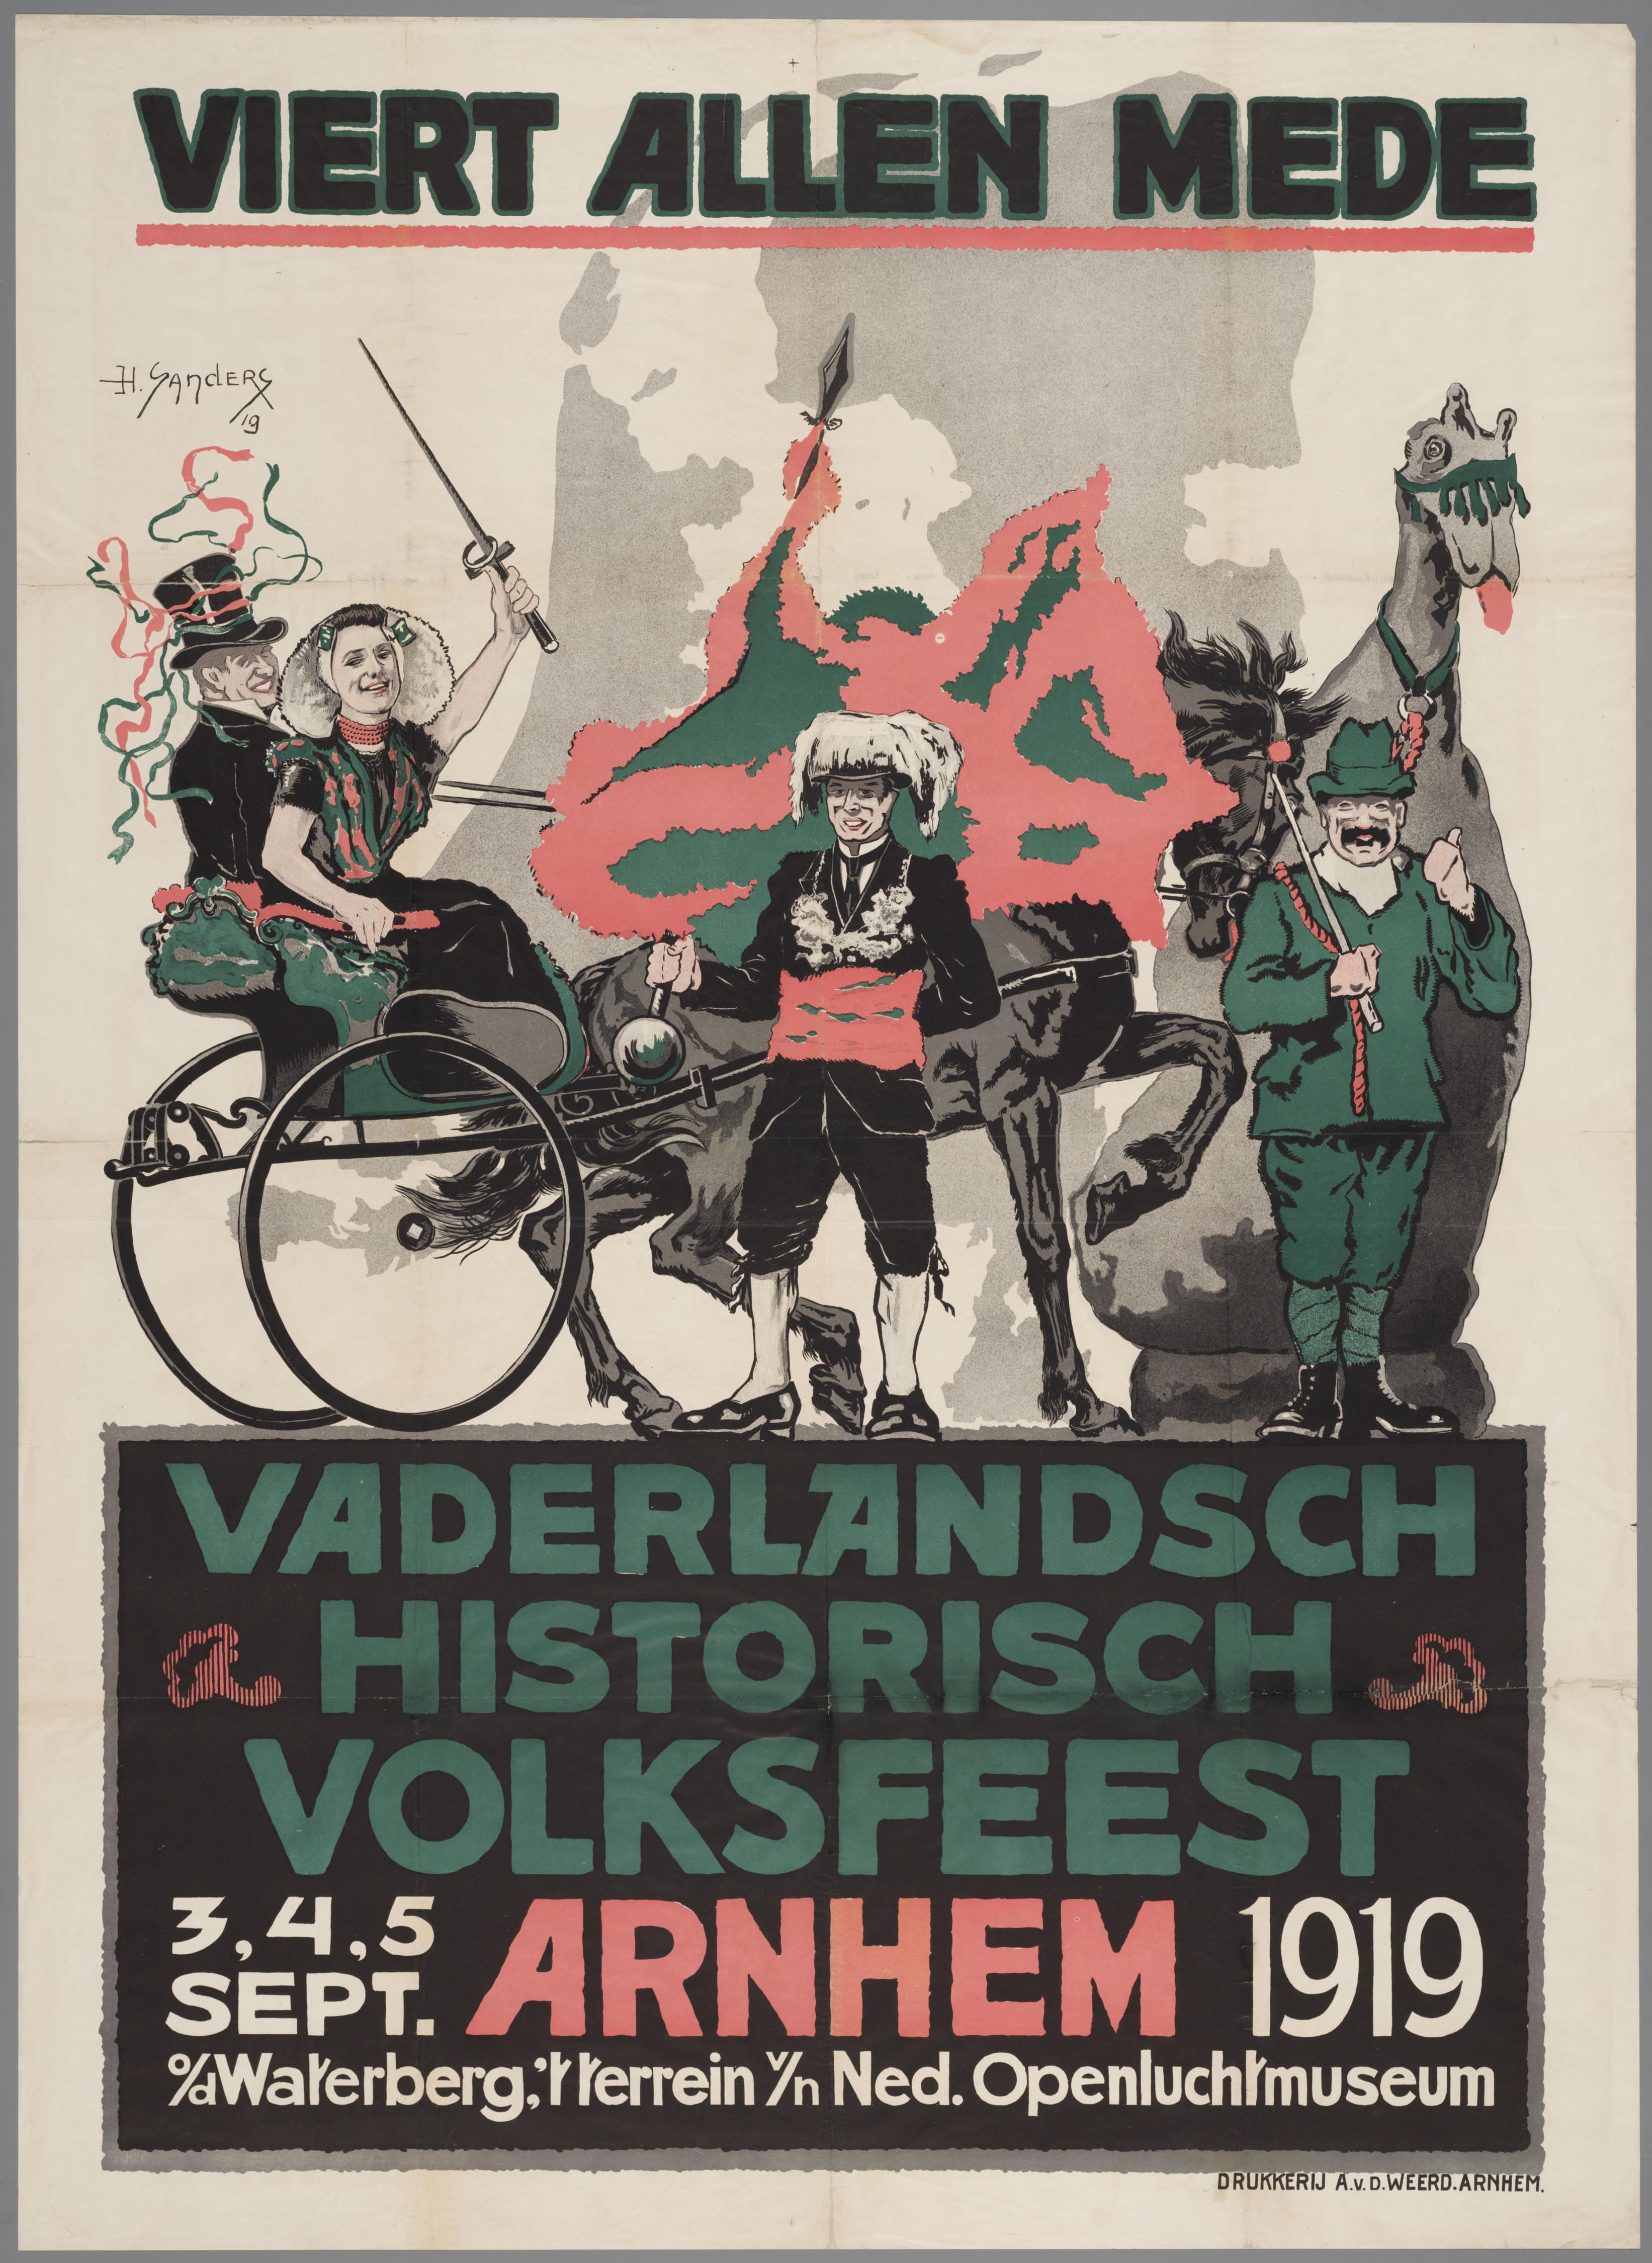 Affiche voor het Vaderlandsch Historisch Volksfeest in 1919